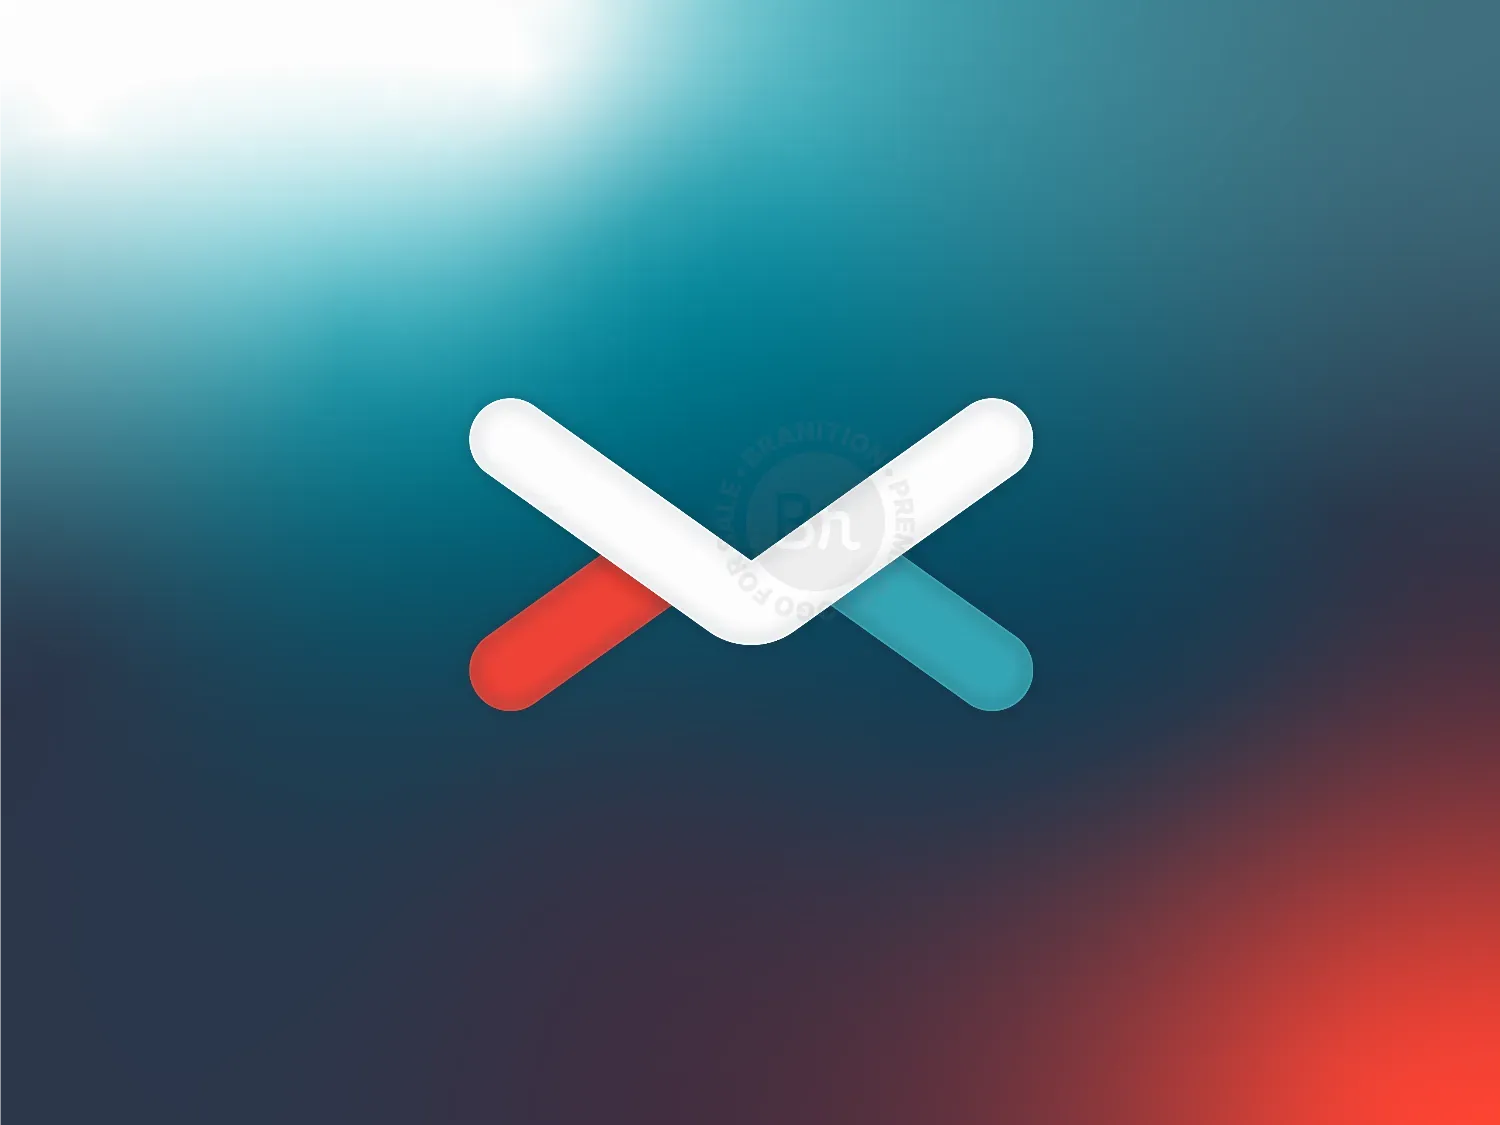 Inbox X Letter Logo